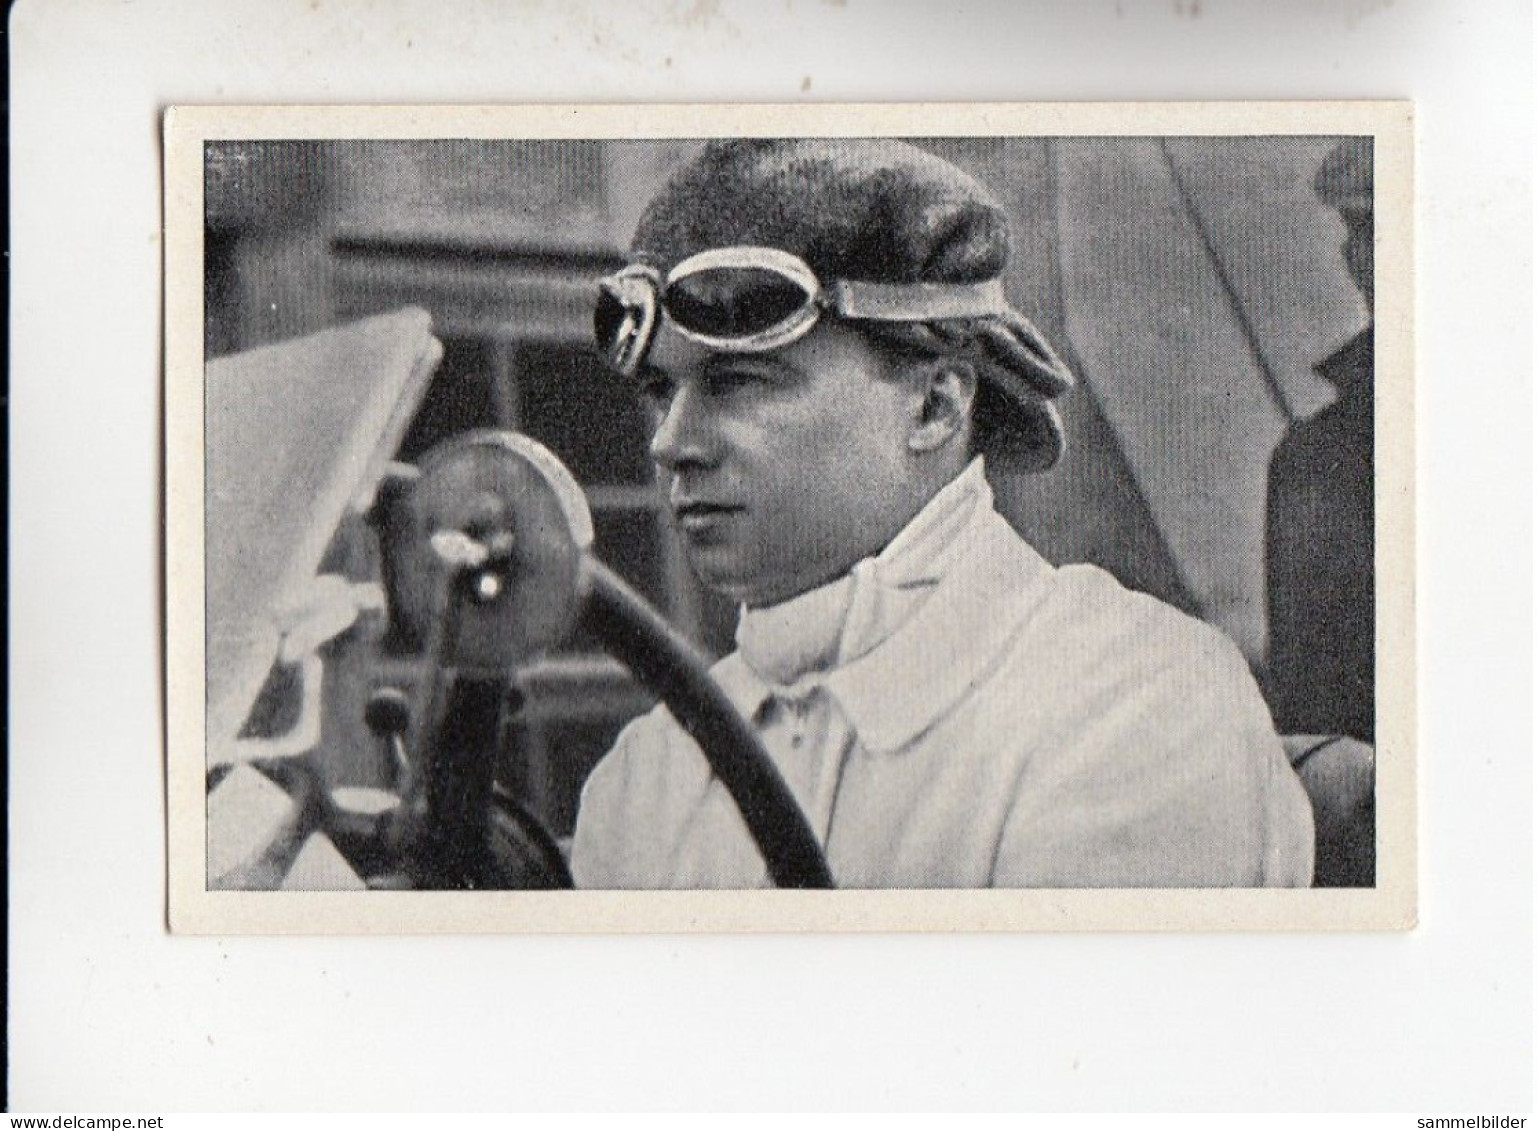 Mit Trumpf Durch Alle Welt Berühmte Rennfahrer Rudolf Caracciola    A Serie 6 #2 Von 1933 - Zigarettenmarken